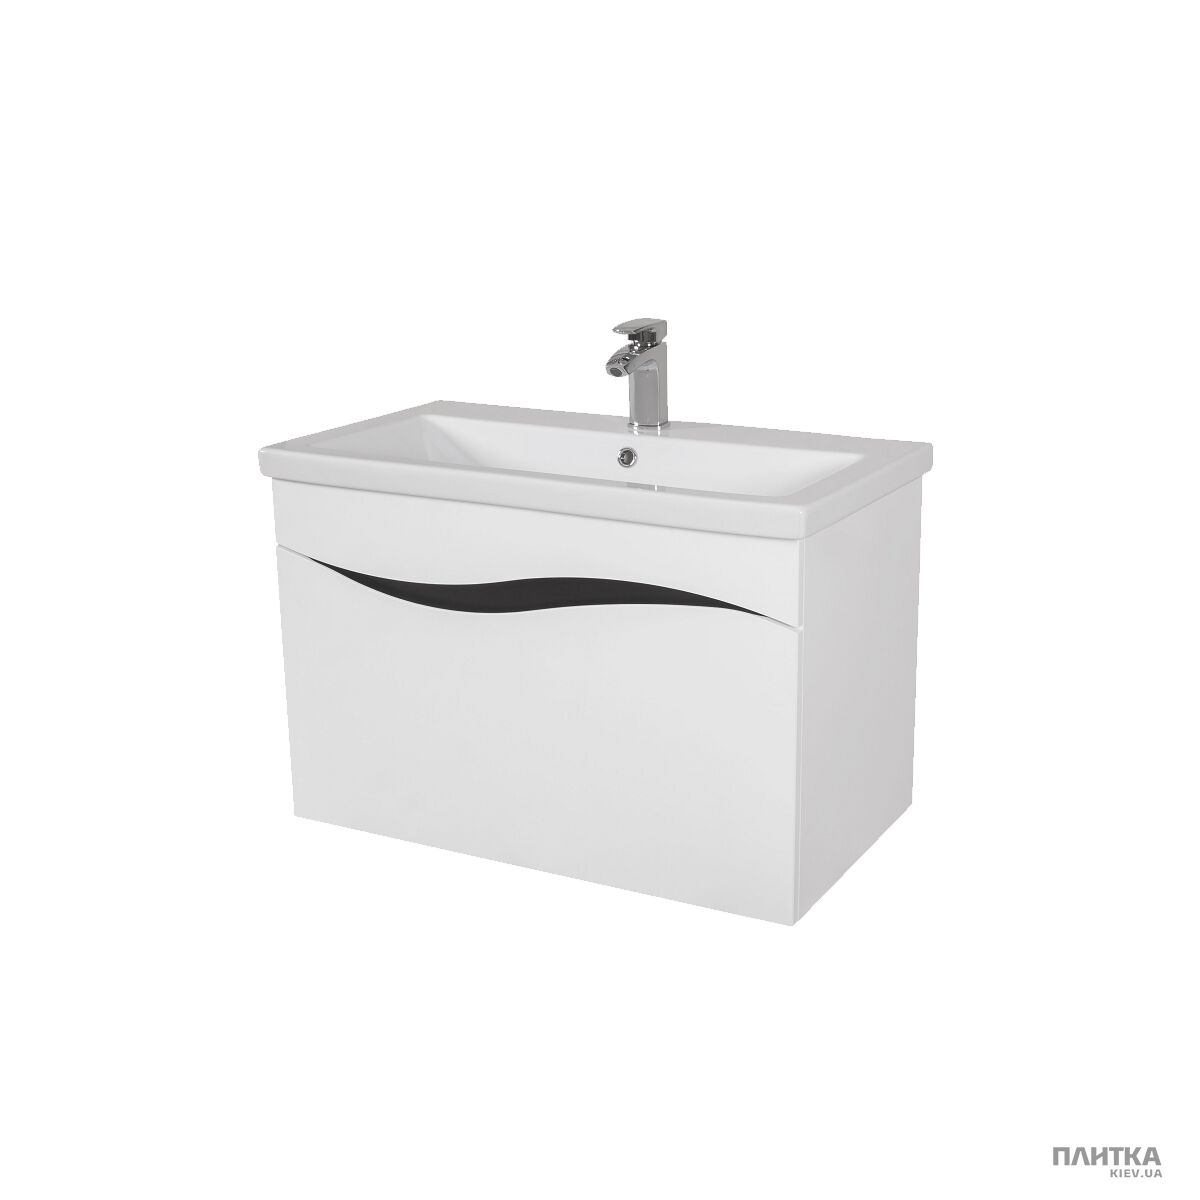 Мебель для ванной комнаты Аква Родос Альфа АЛЬФА-80 "Como" белый с узором